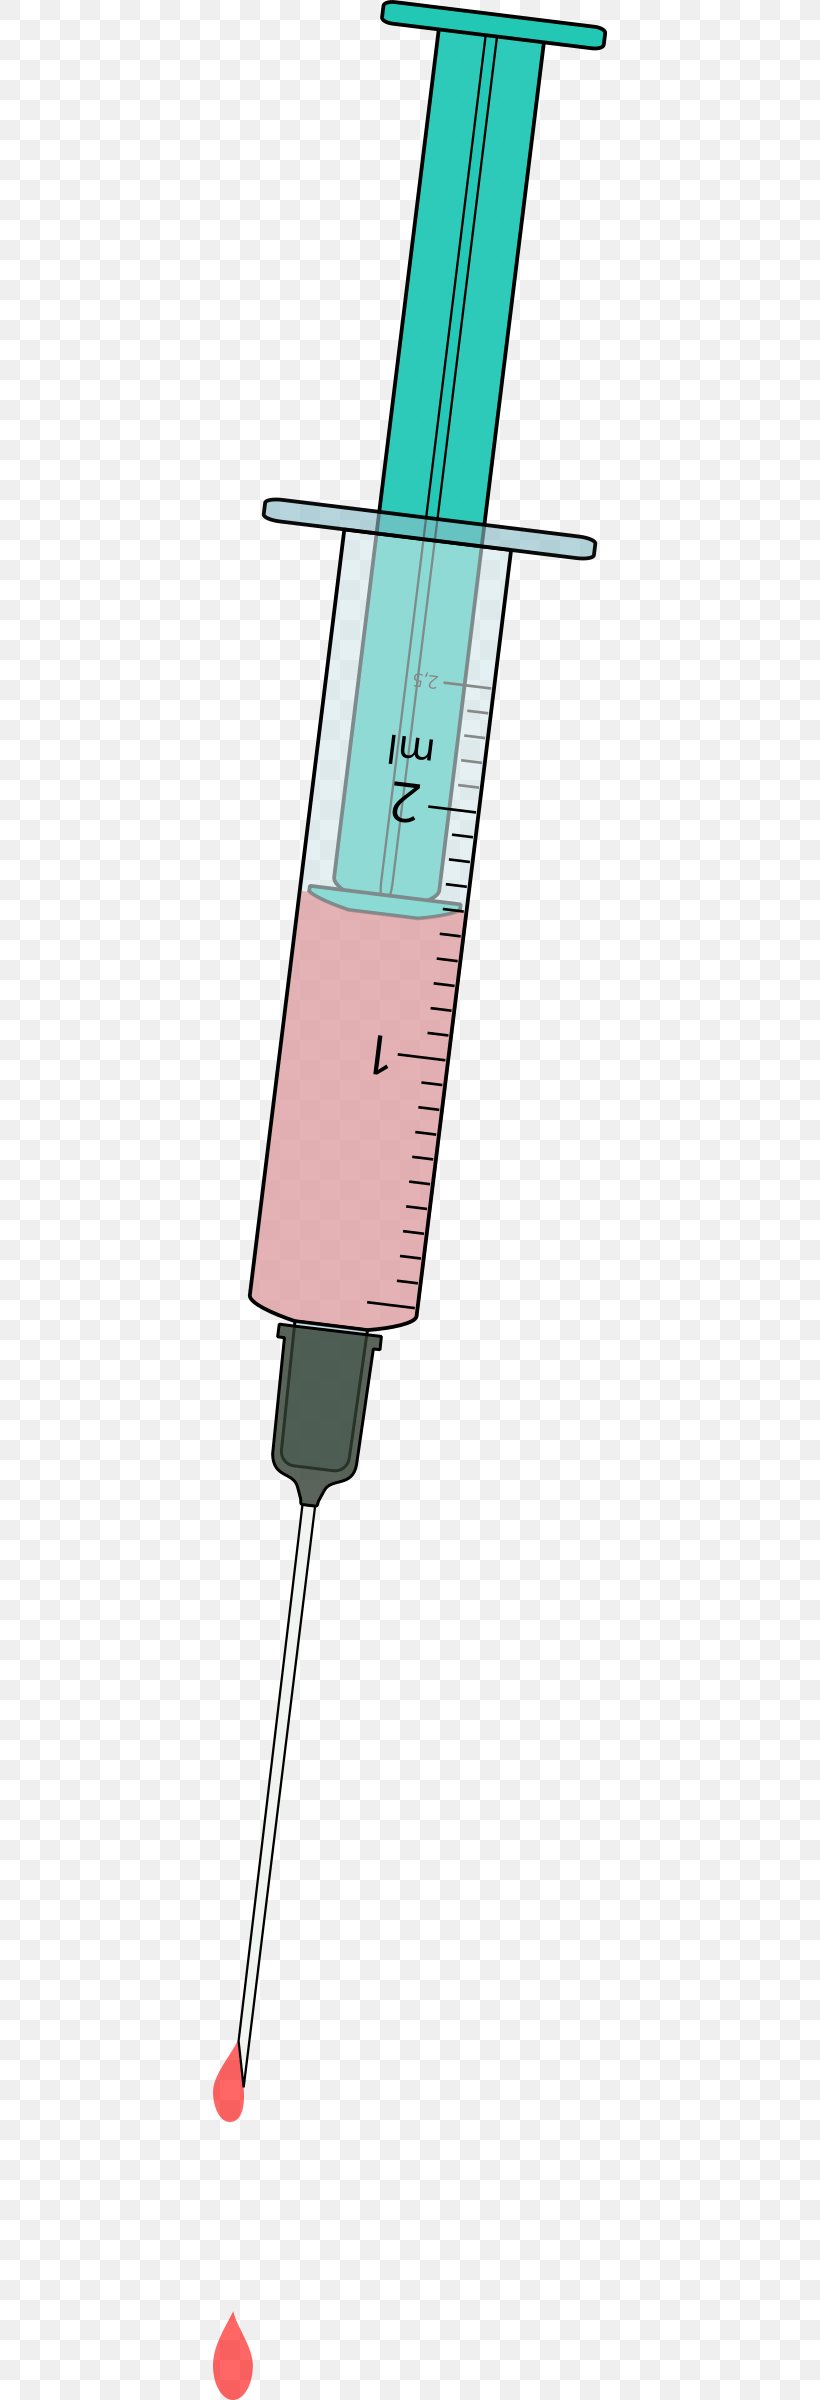 Syringe Clip Art, PNG, 394x2400px, Syringe, Area, Hypodermic Needle, Medicine, Nursing Care Download Free